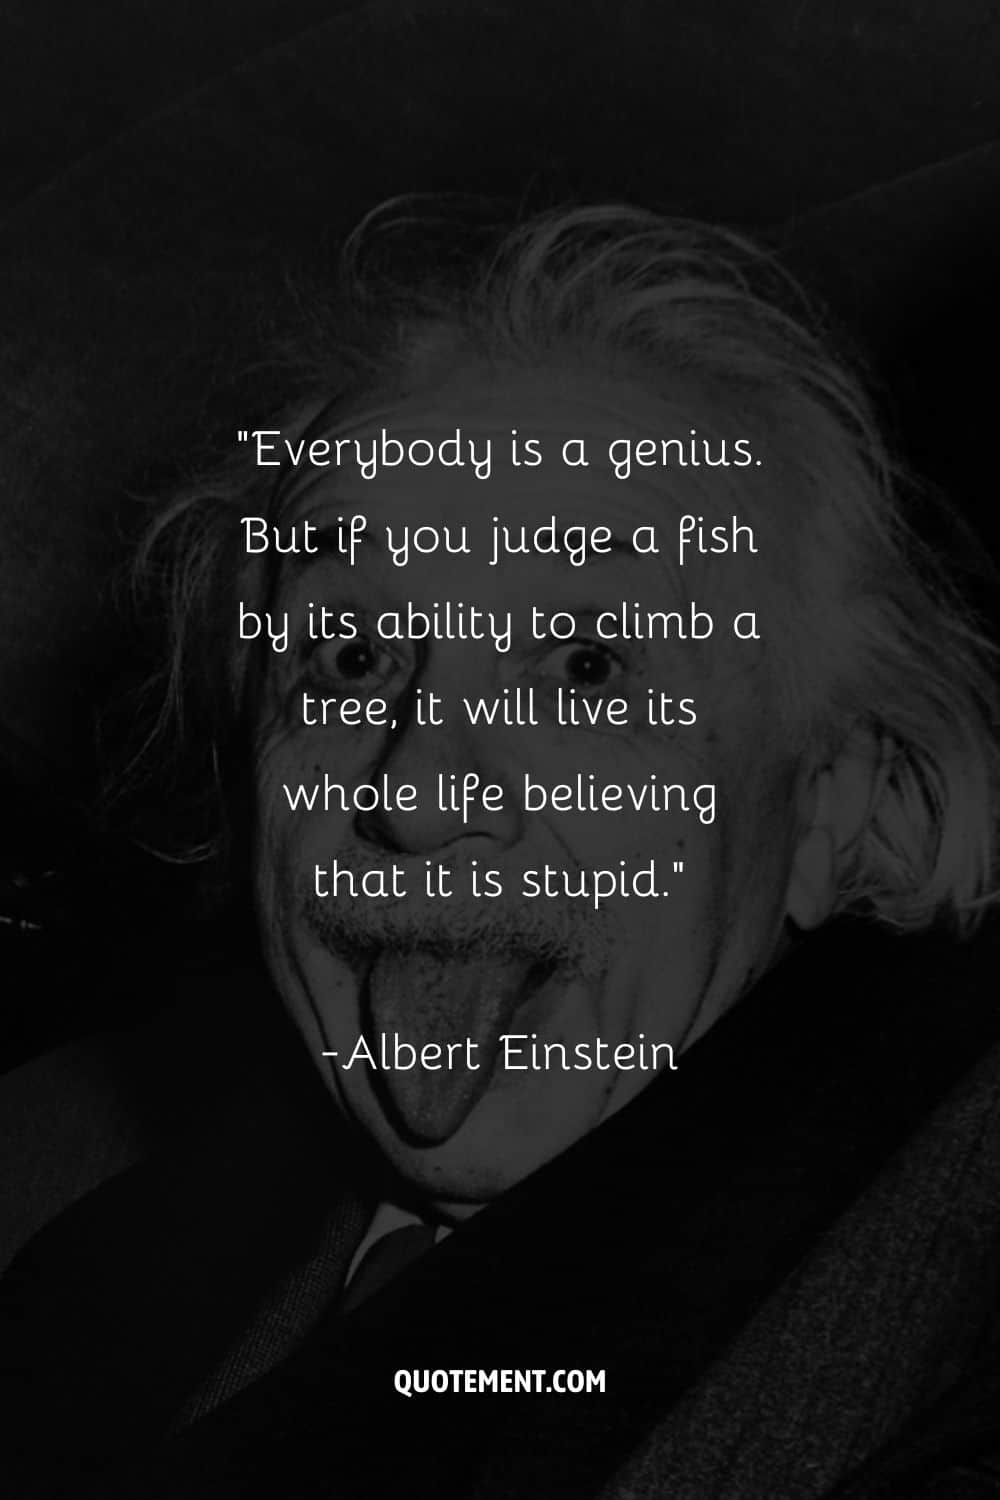 Todo el mundo es un genio. Pero si juzgas a un pez por su capacidad para trepar a un árbol, vivirá toda su vida creyendo que es estúpido.